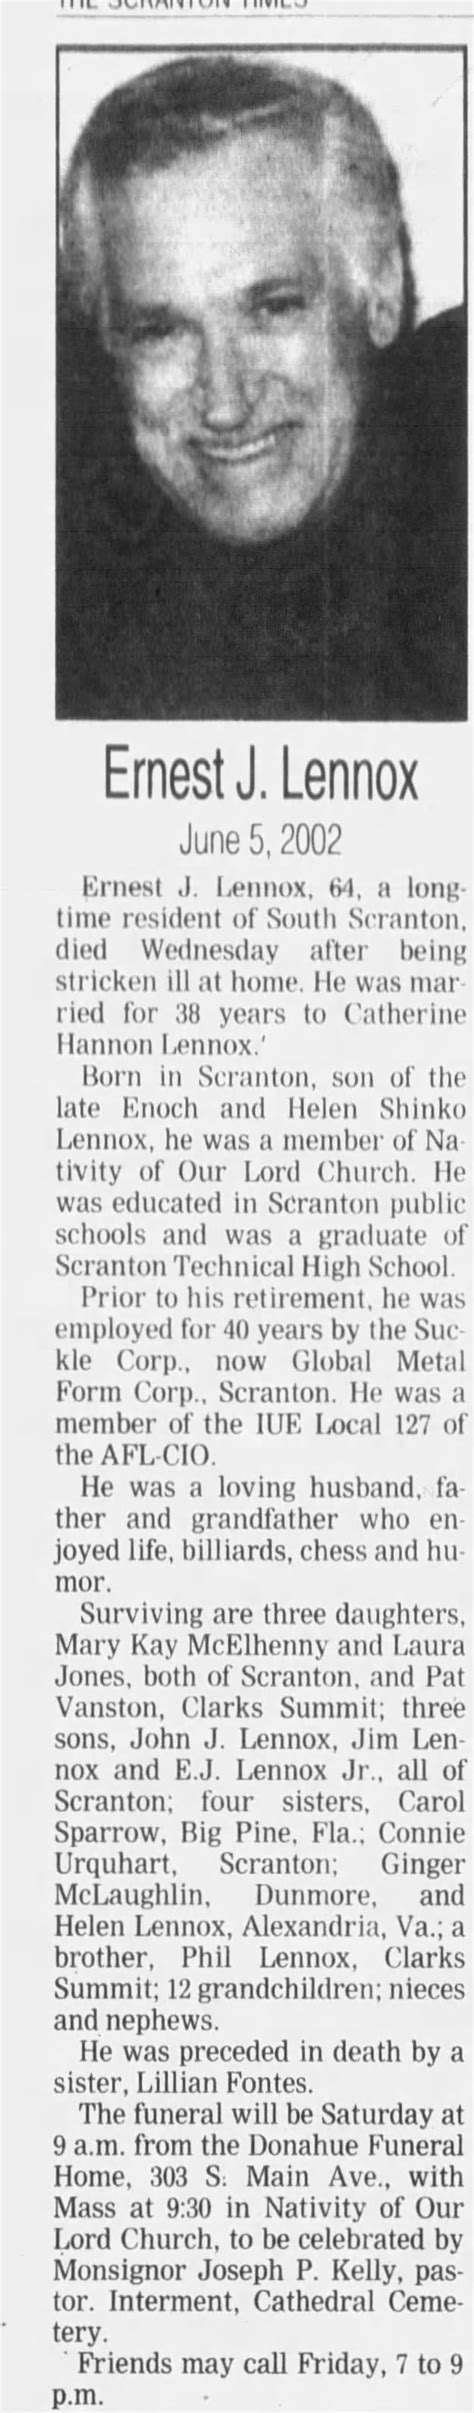 Obituary For Ernest J Lennox Aged 64